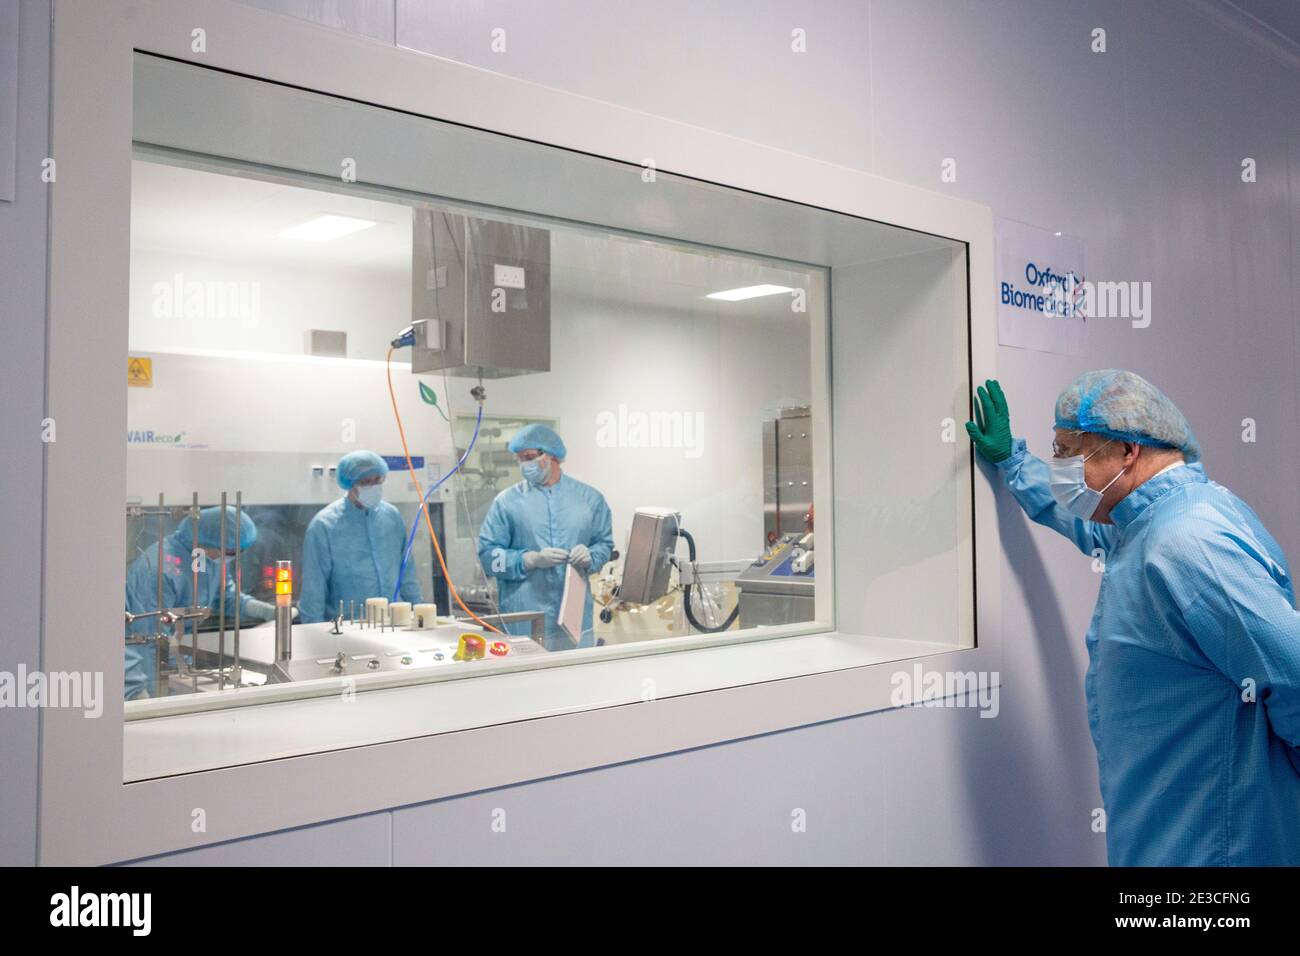 Le Premier ministre Boris Johnson devant une fenêtre d'observation lors d'une visite de l'usine de fabrication du vaccin Oxford/AstraZeneca à Oxford Biomedica dans l'Oxfordshire. Date de la photo: Lundi 18 janvier 2021. Banque D'Images